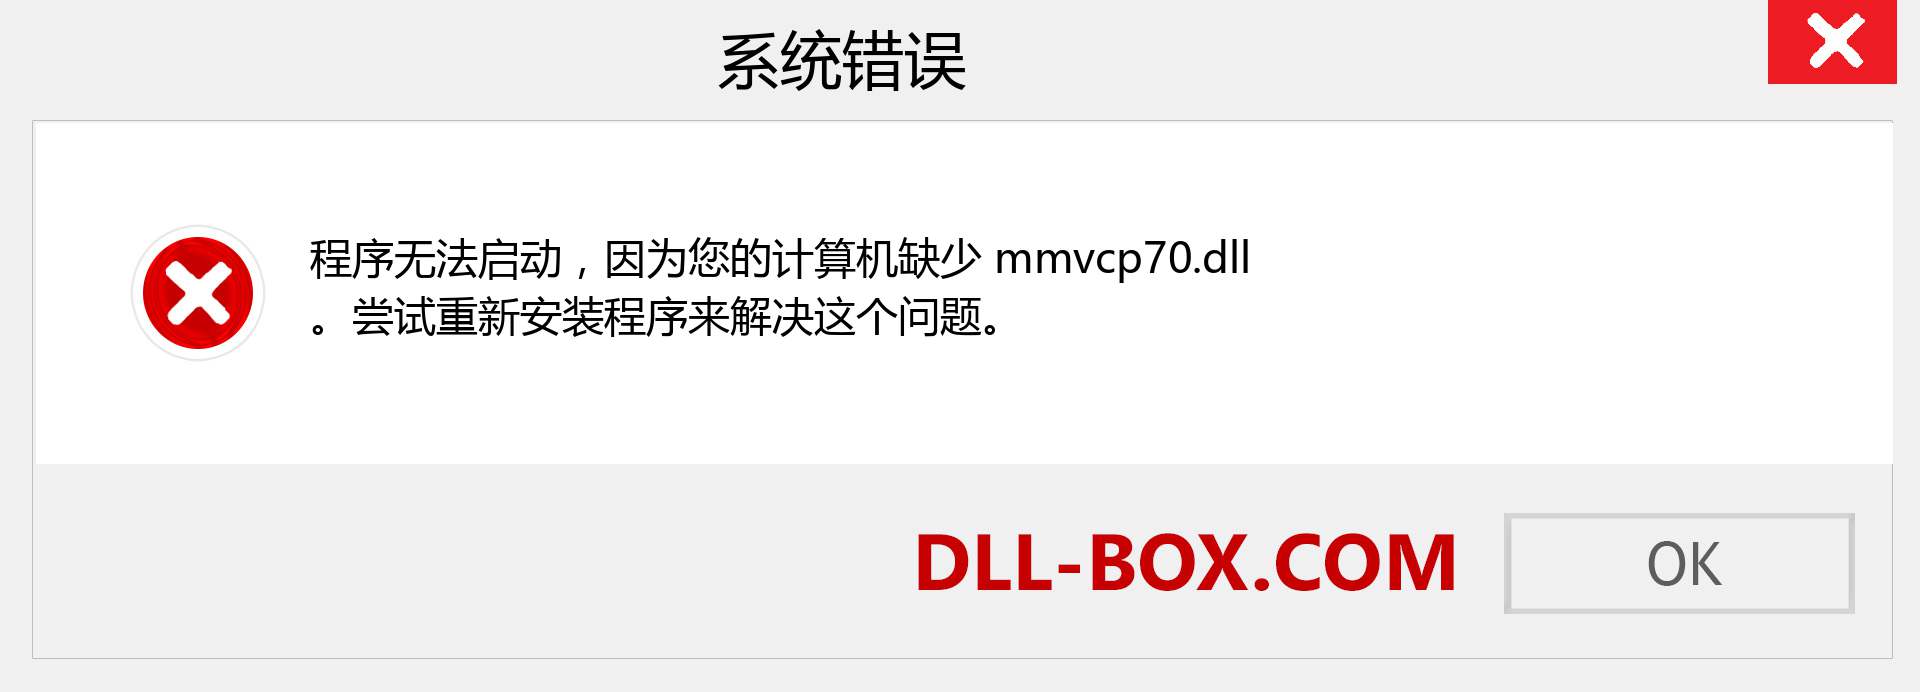 mmvcp70.dll 文件丢失？。 适用于 Windows 7、8、10 的下载 - 修复 Windows、照片、图像上的 mmvcp70 dll 丢失错误